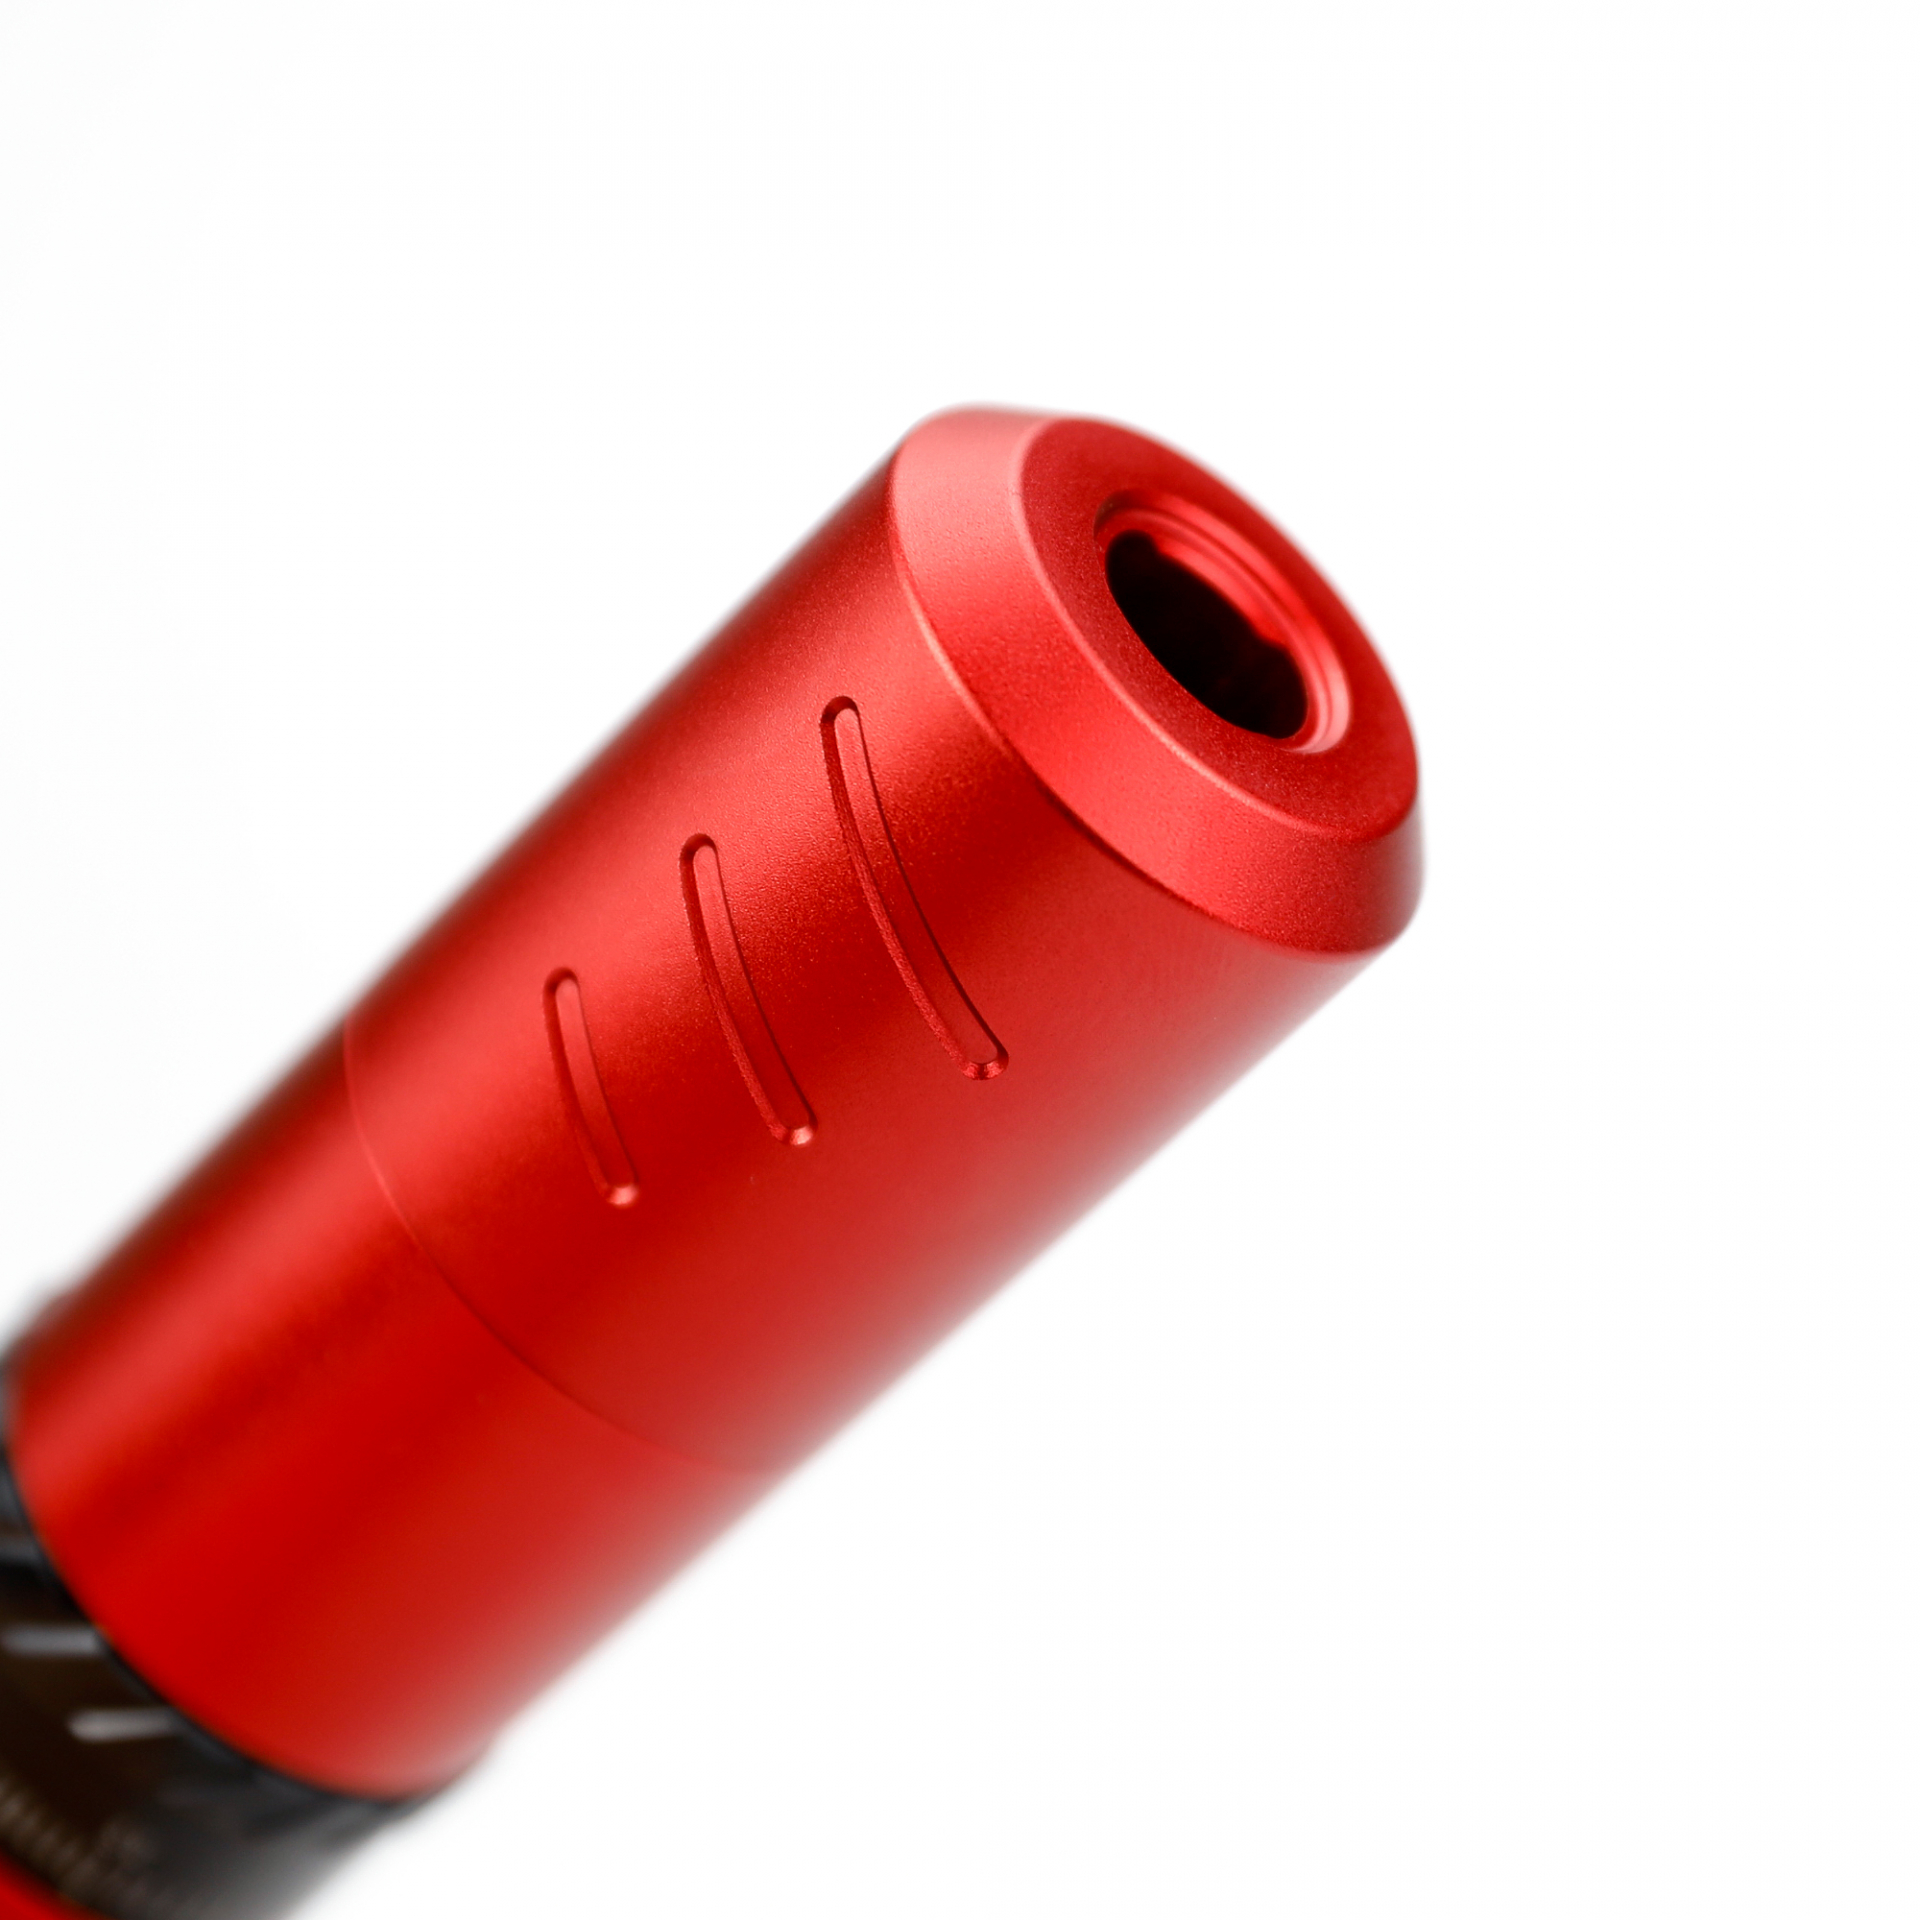 AVA GT EP10 - Piros - Pen Tetoválógép - Vezetéknélküli - Akkumulátoros - 4,5mm